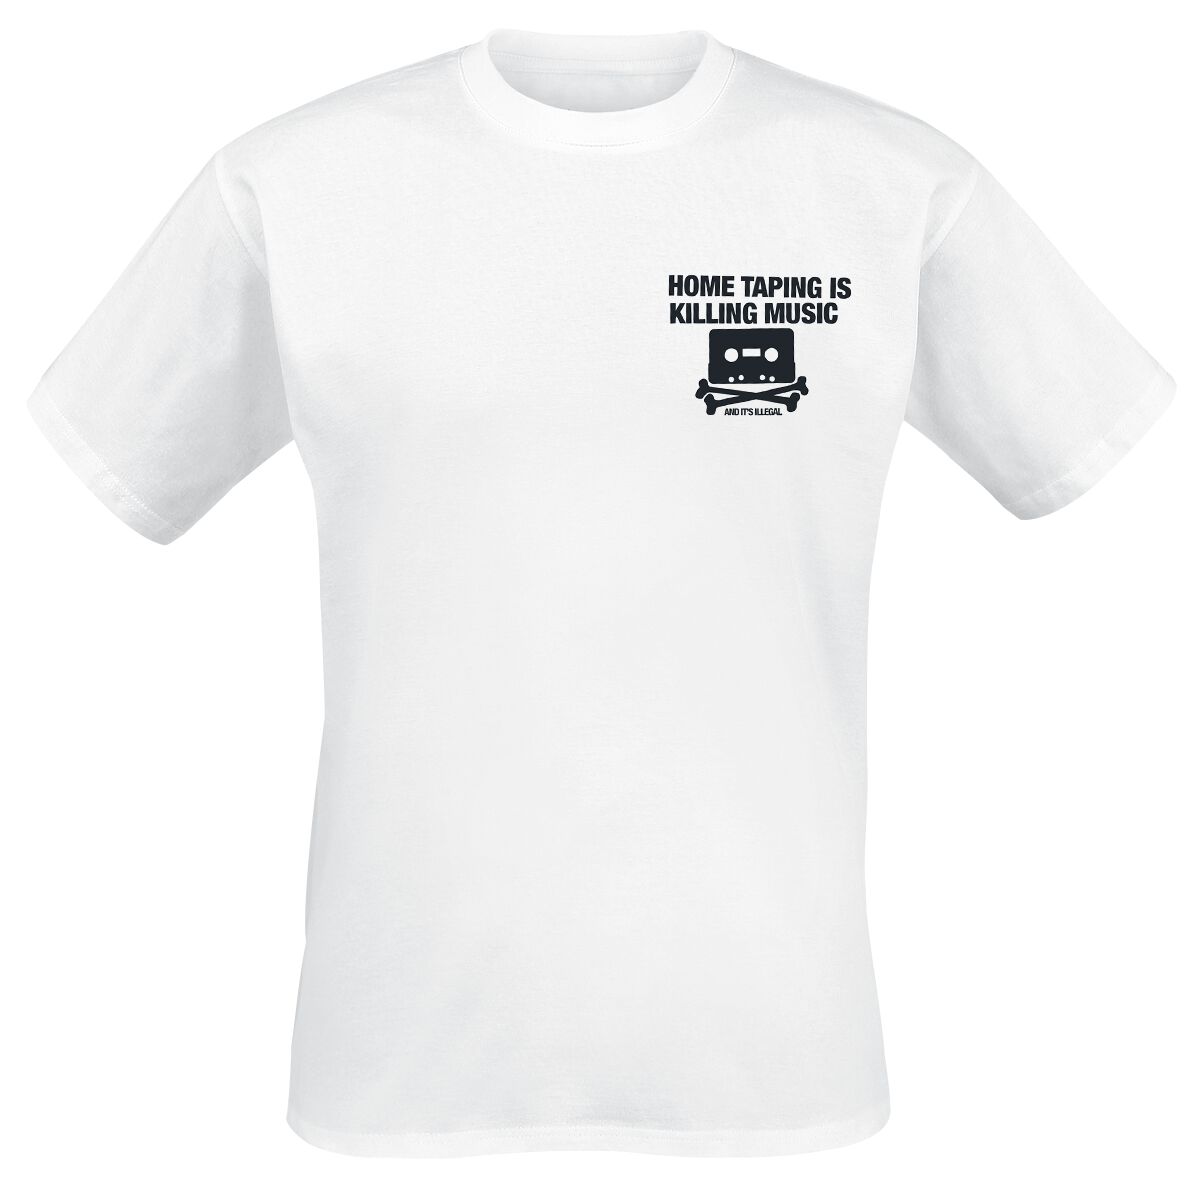 Parental Advisory T-Shirt - Home Taping - S bis XXL - für Männer - Größe XXL - weiß  - Lizenziertes Merchandise!